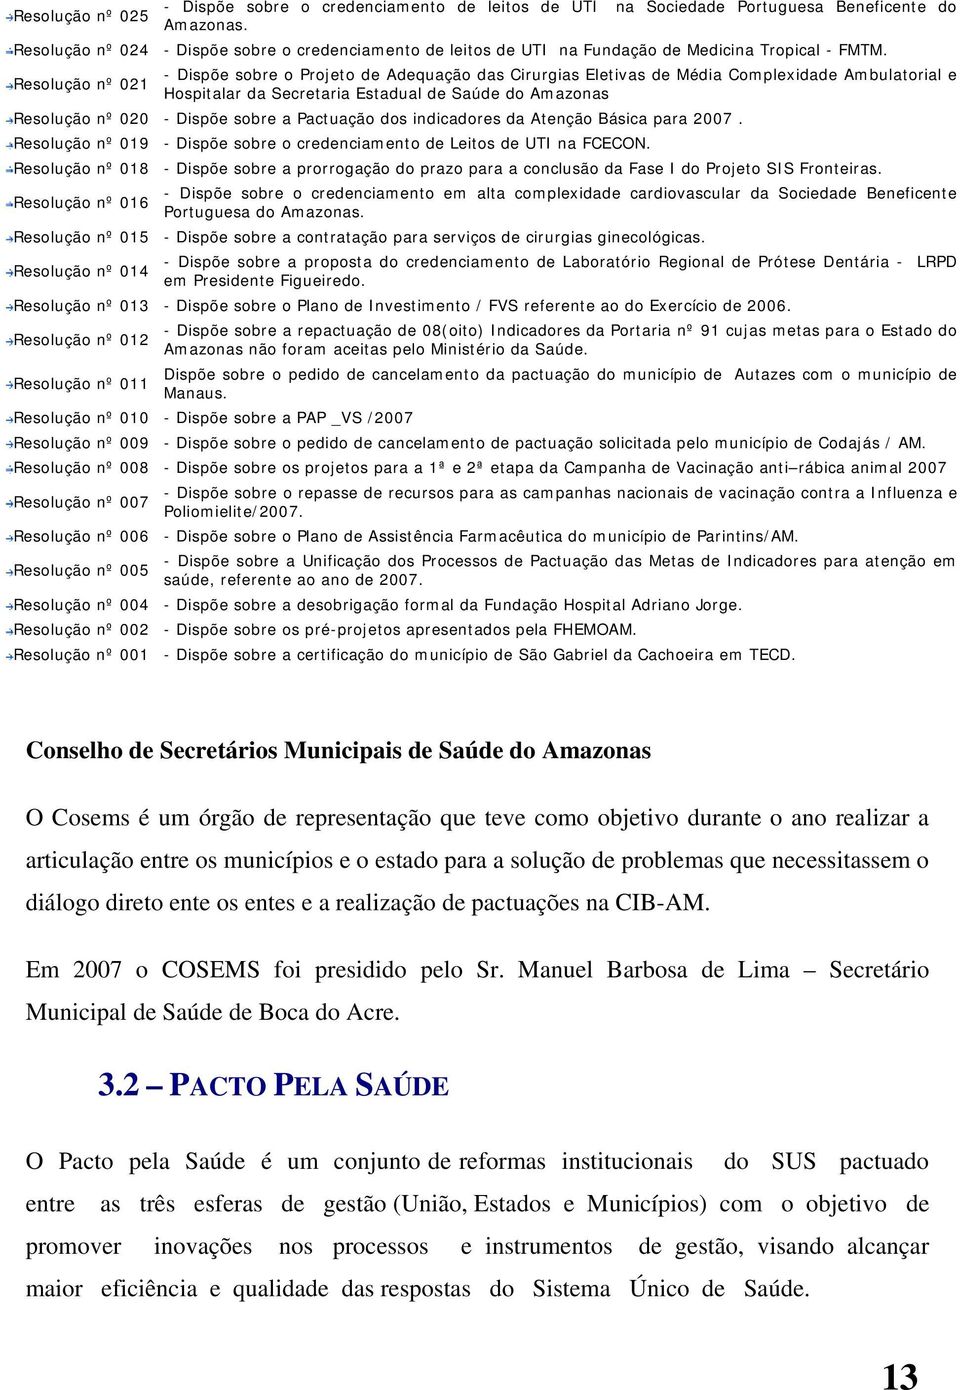 Resolução nº 021 - Dispõe sobre o Projeto de Adequação das Cirurgias Eletivas de Média Complexidade Ambulatorial e Hospitalar da Secretaria Estadual de Saúde do Amazonas Resolução nº 020 - Dispõe